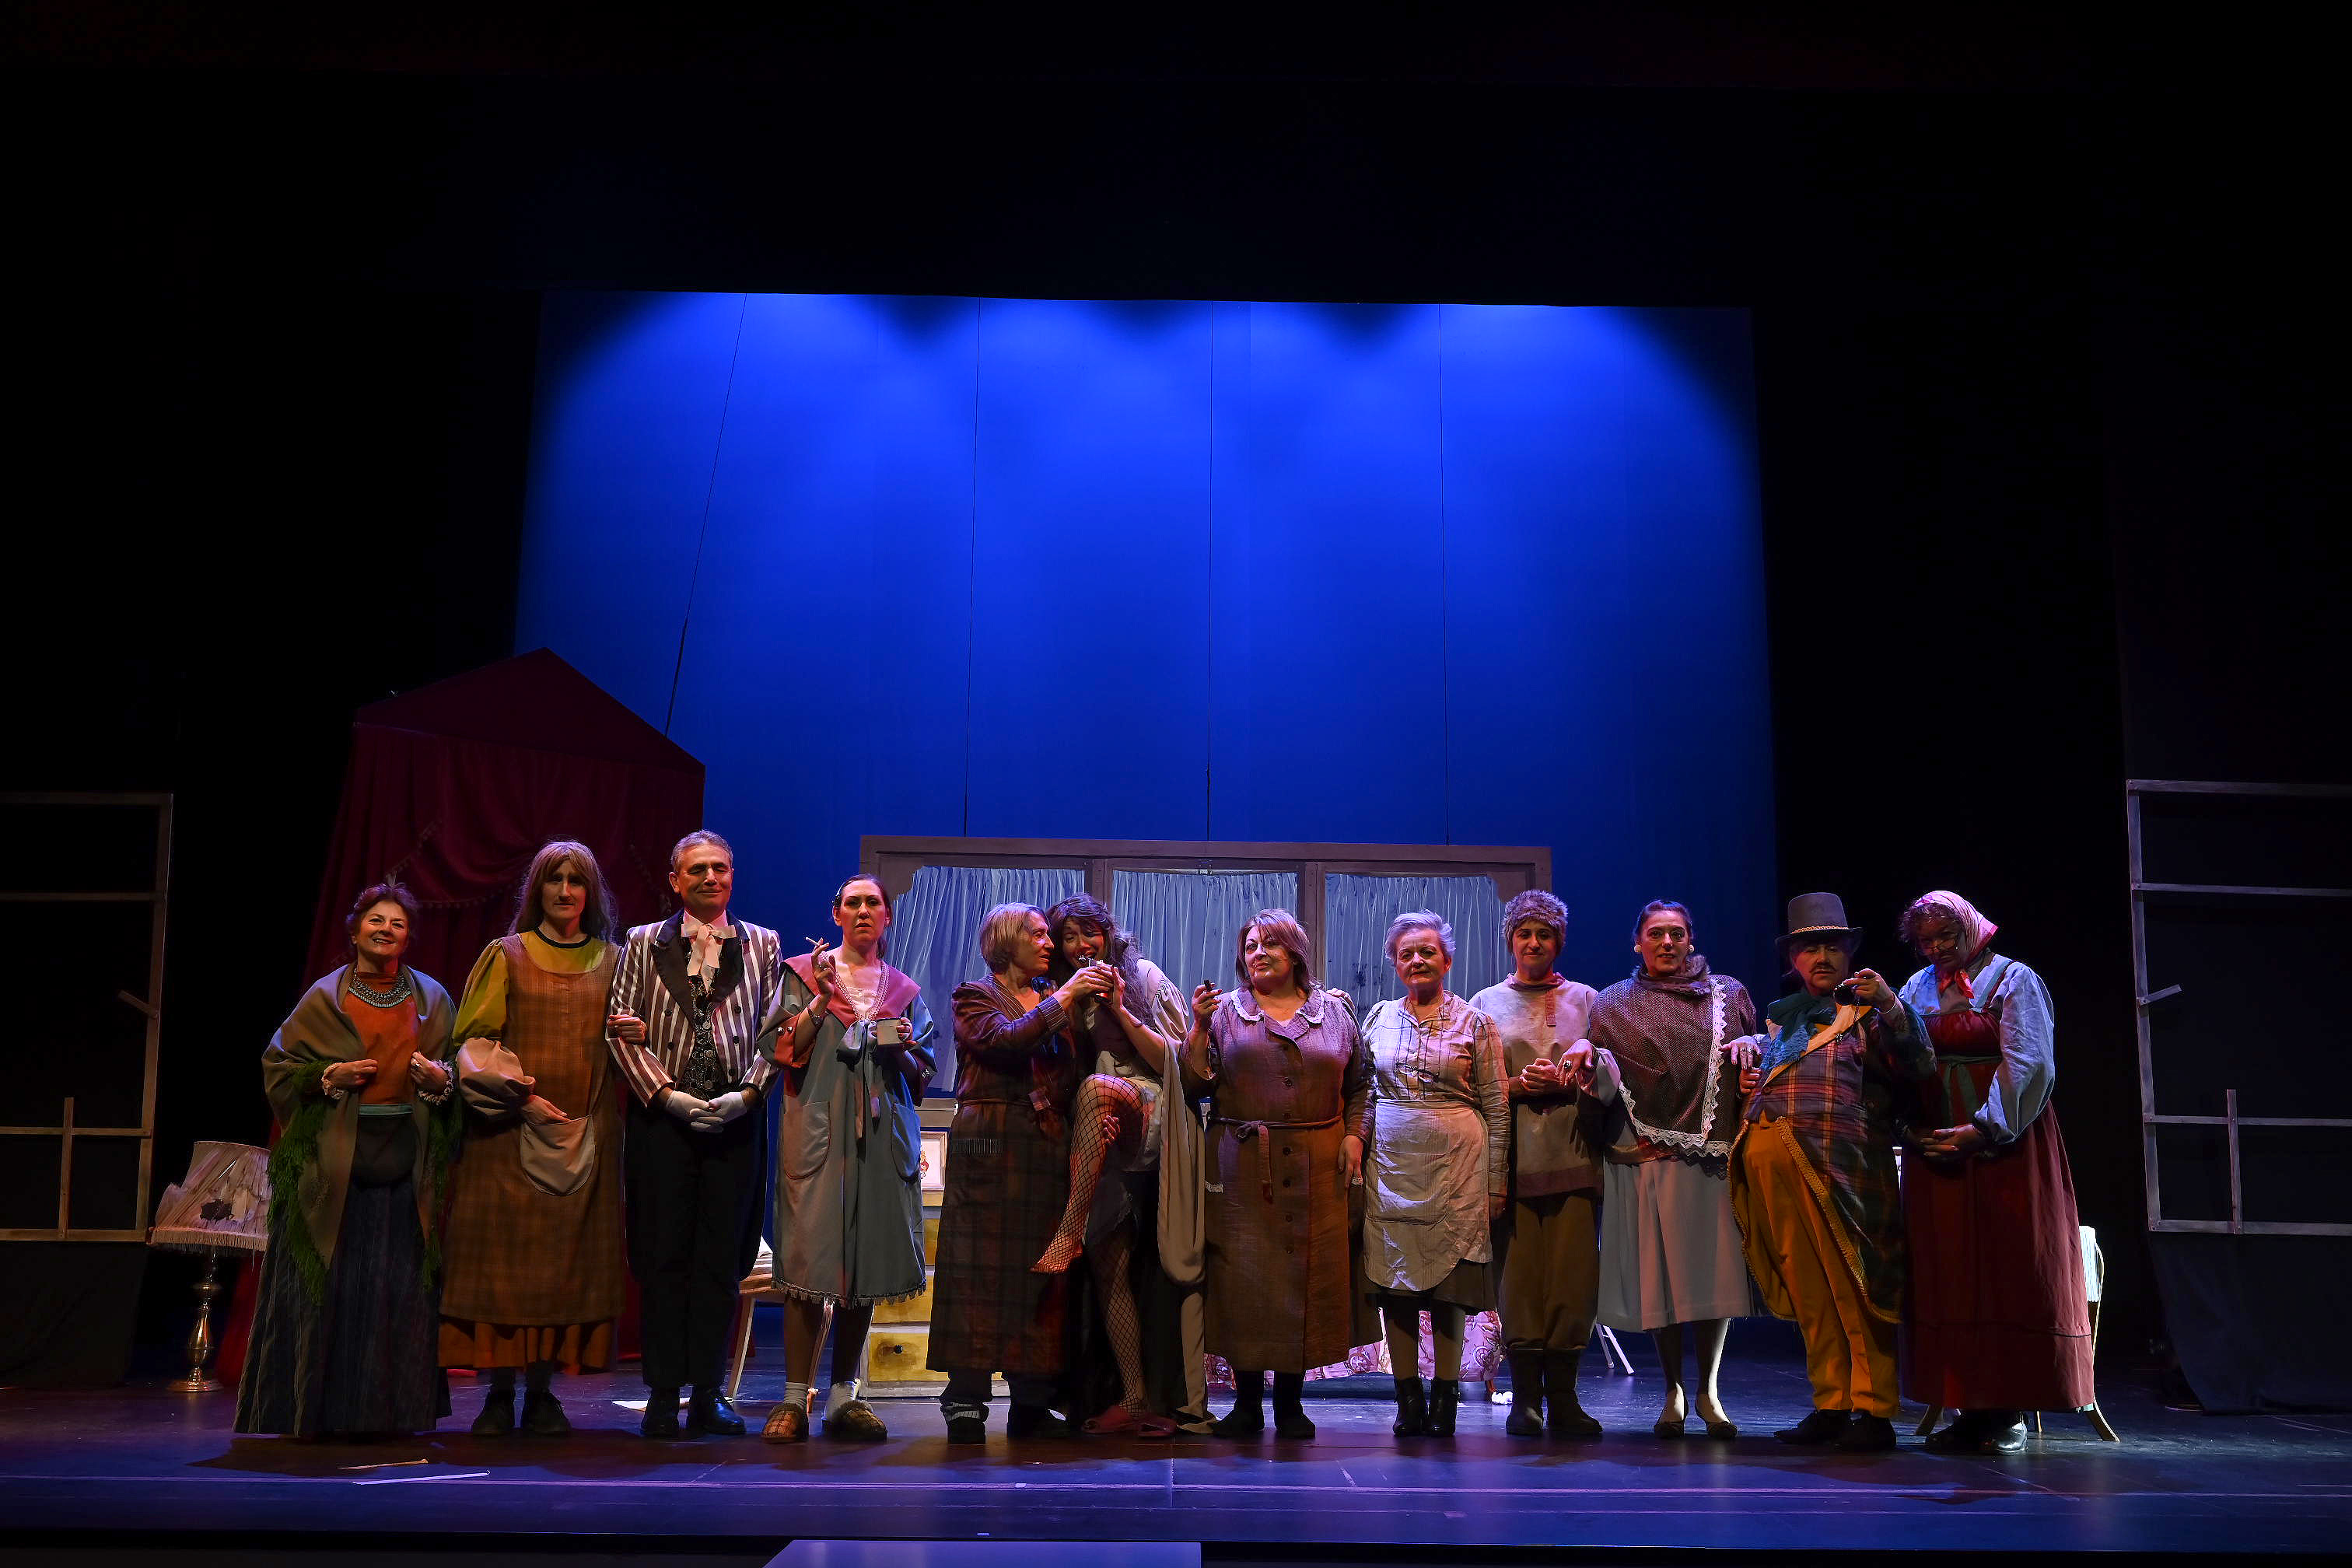 Elenco de Jacaranda11 tras el estreno en el Teatro Municipal de Armilla